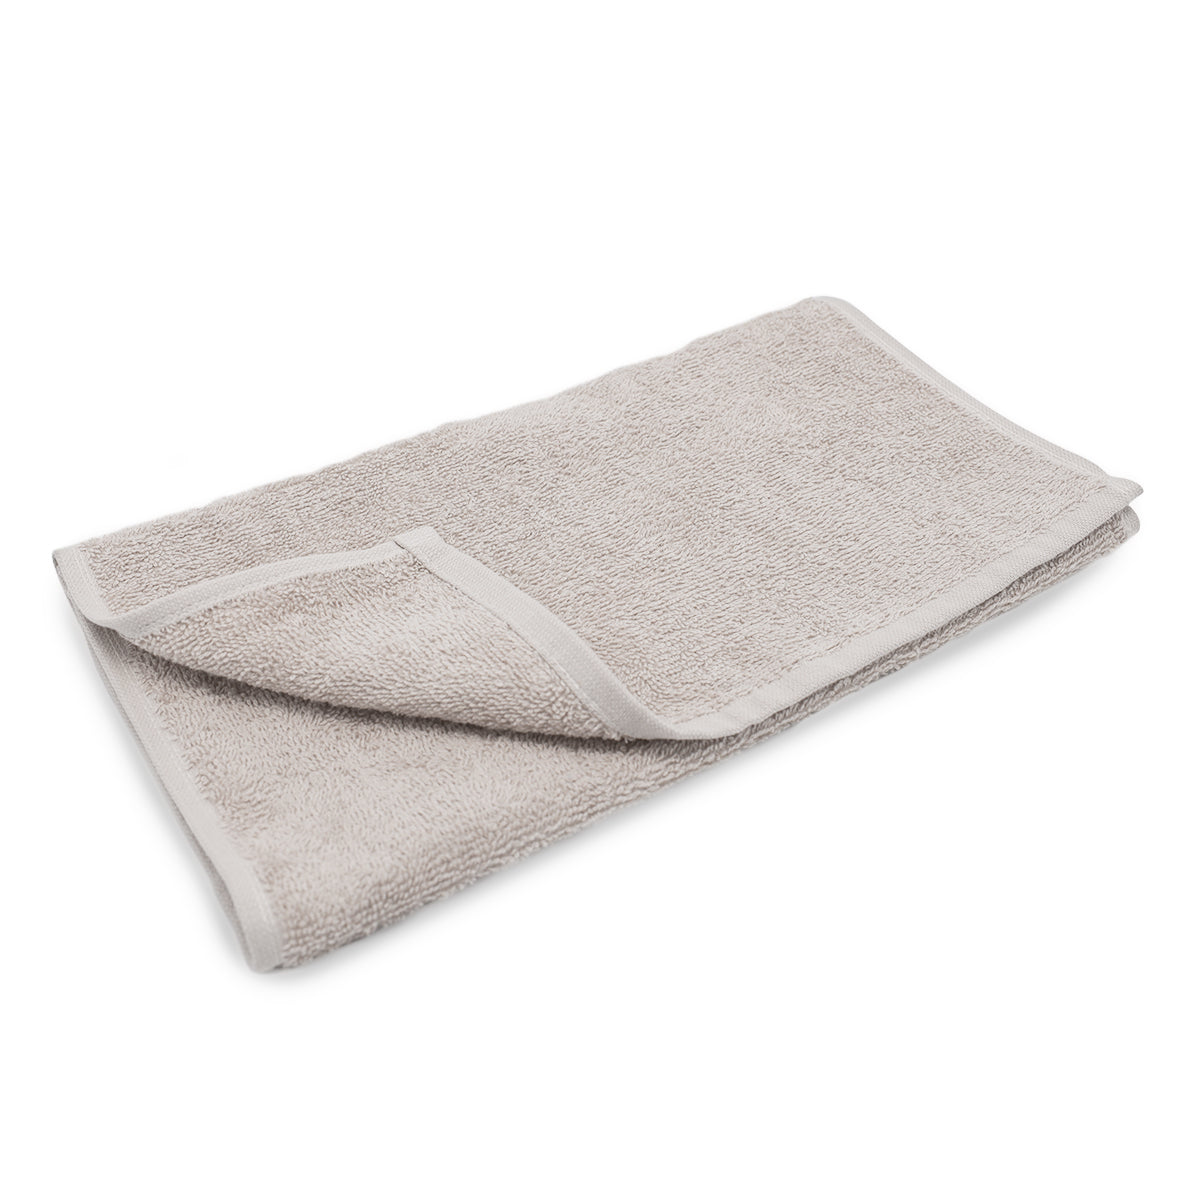 (250 stk.) Grønlandsk ansigtstørklæde til massage - 30 x 50 cm - Sand